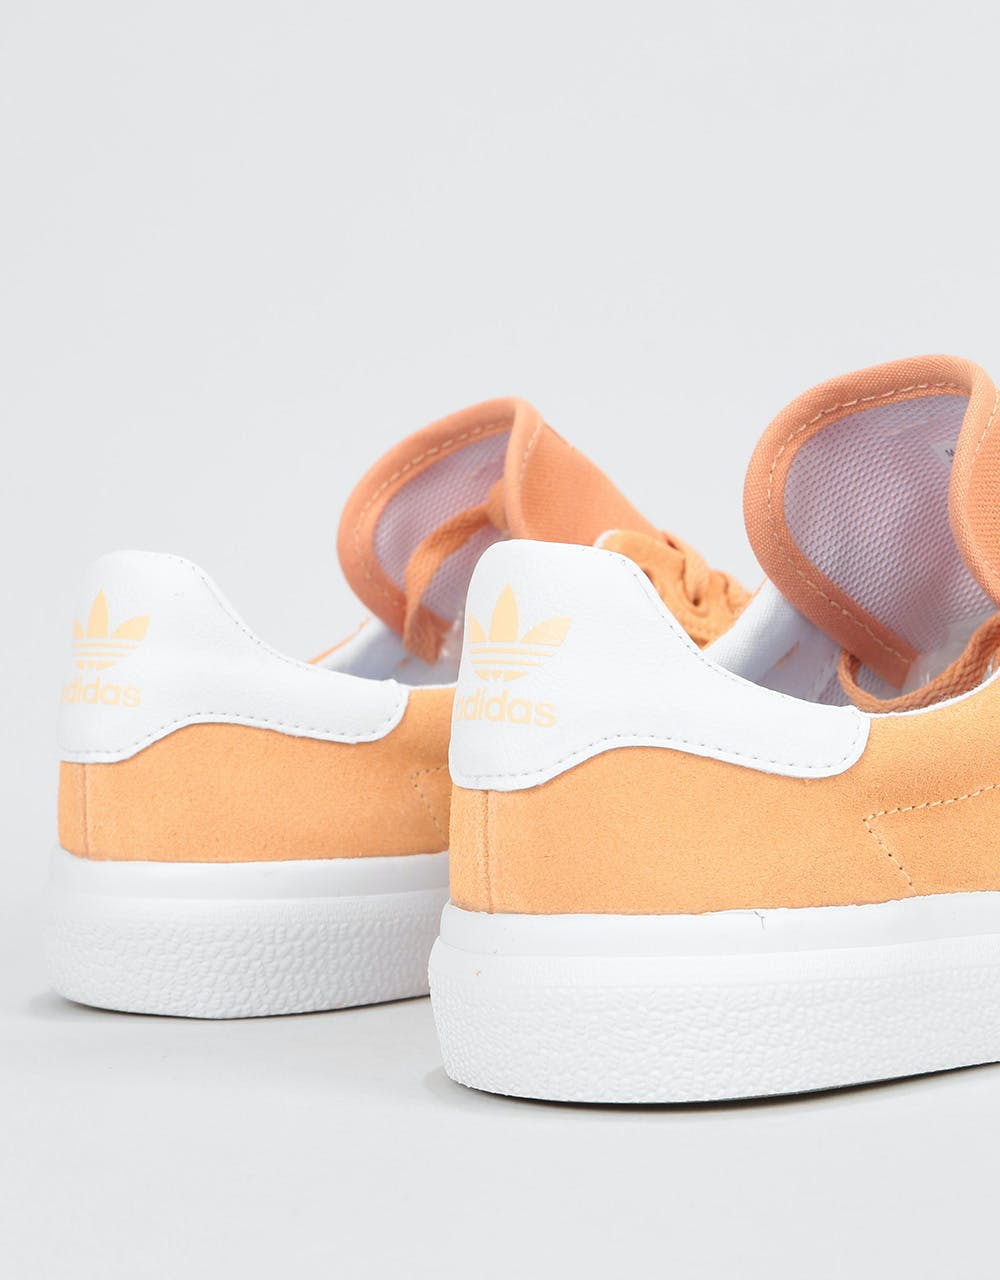 Adidas 3MC Skate Shoes - Glow Orange/White/White